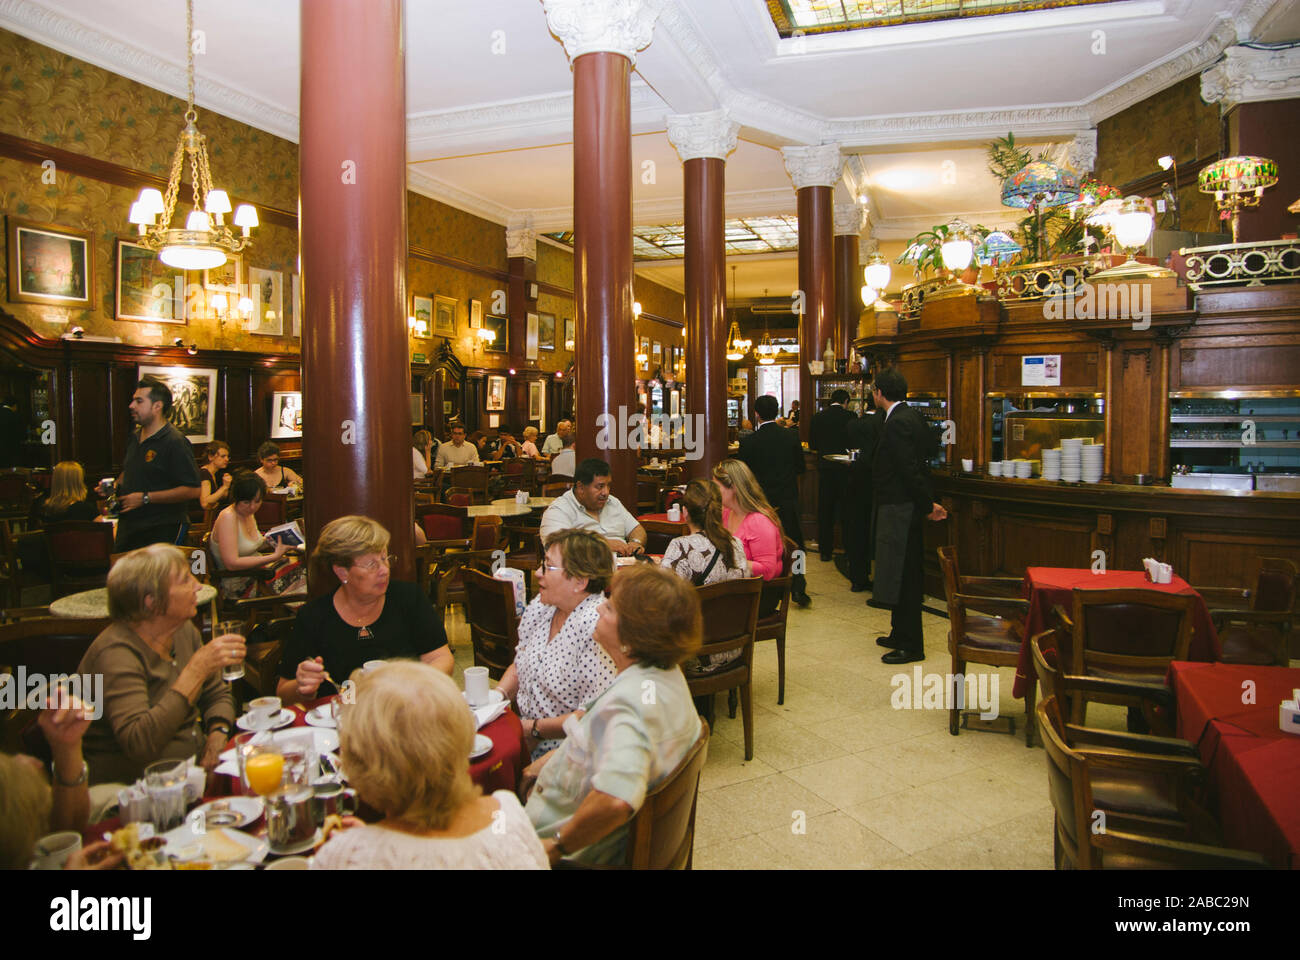 BUENOS AIRES, Argentinien - 7. APRIL: Cafe Tortoni ist ein Cafe Honoratioren in der Avenida de Mayo eröffnet im Jahre 1858, das älteste in der Stadt, auf den 7. April 2008 Stockfoto